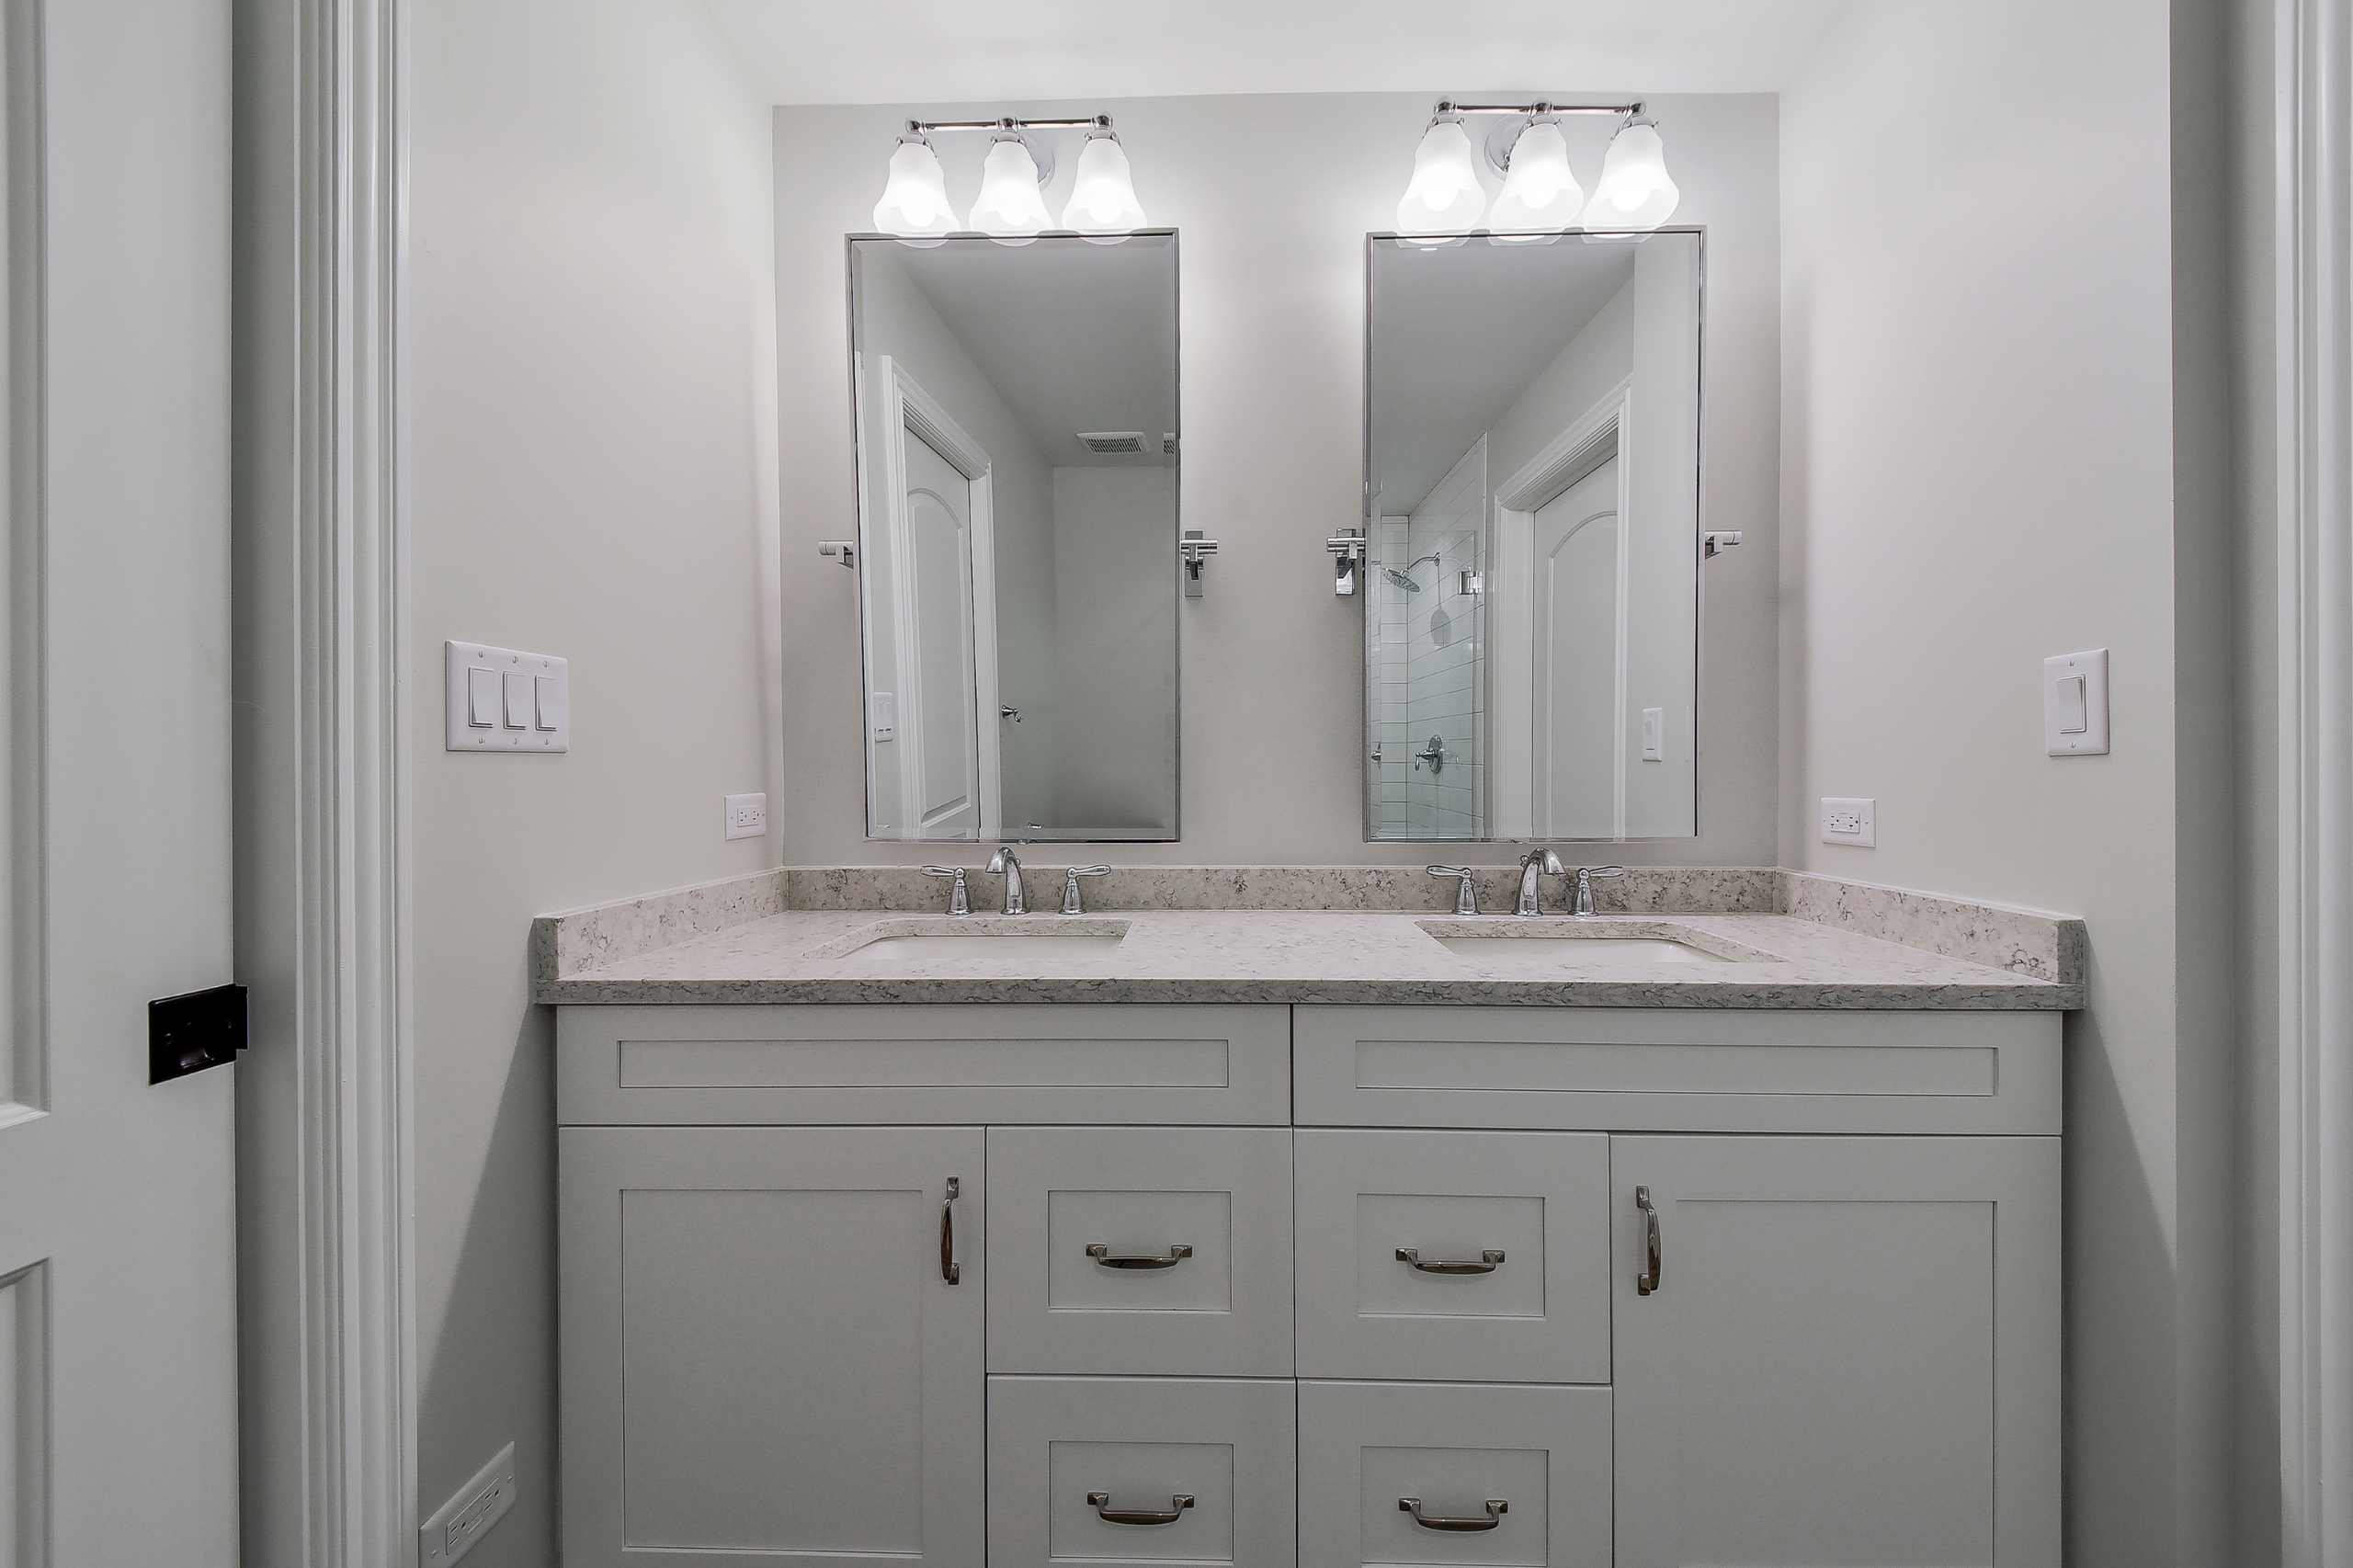 浴室镜子 - 即 - 是完美的最终触摸 - 设计 - 构建